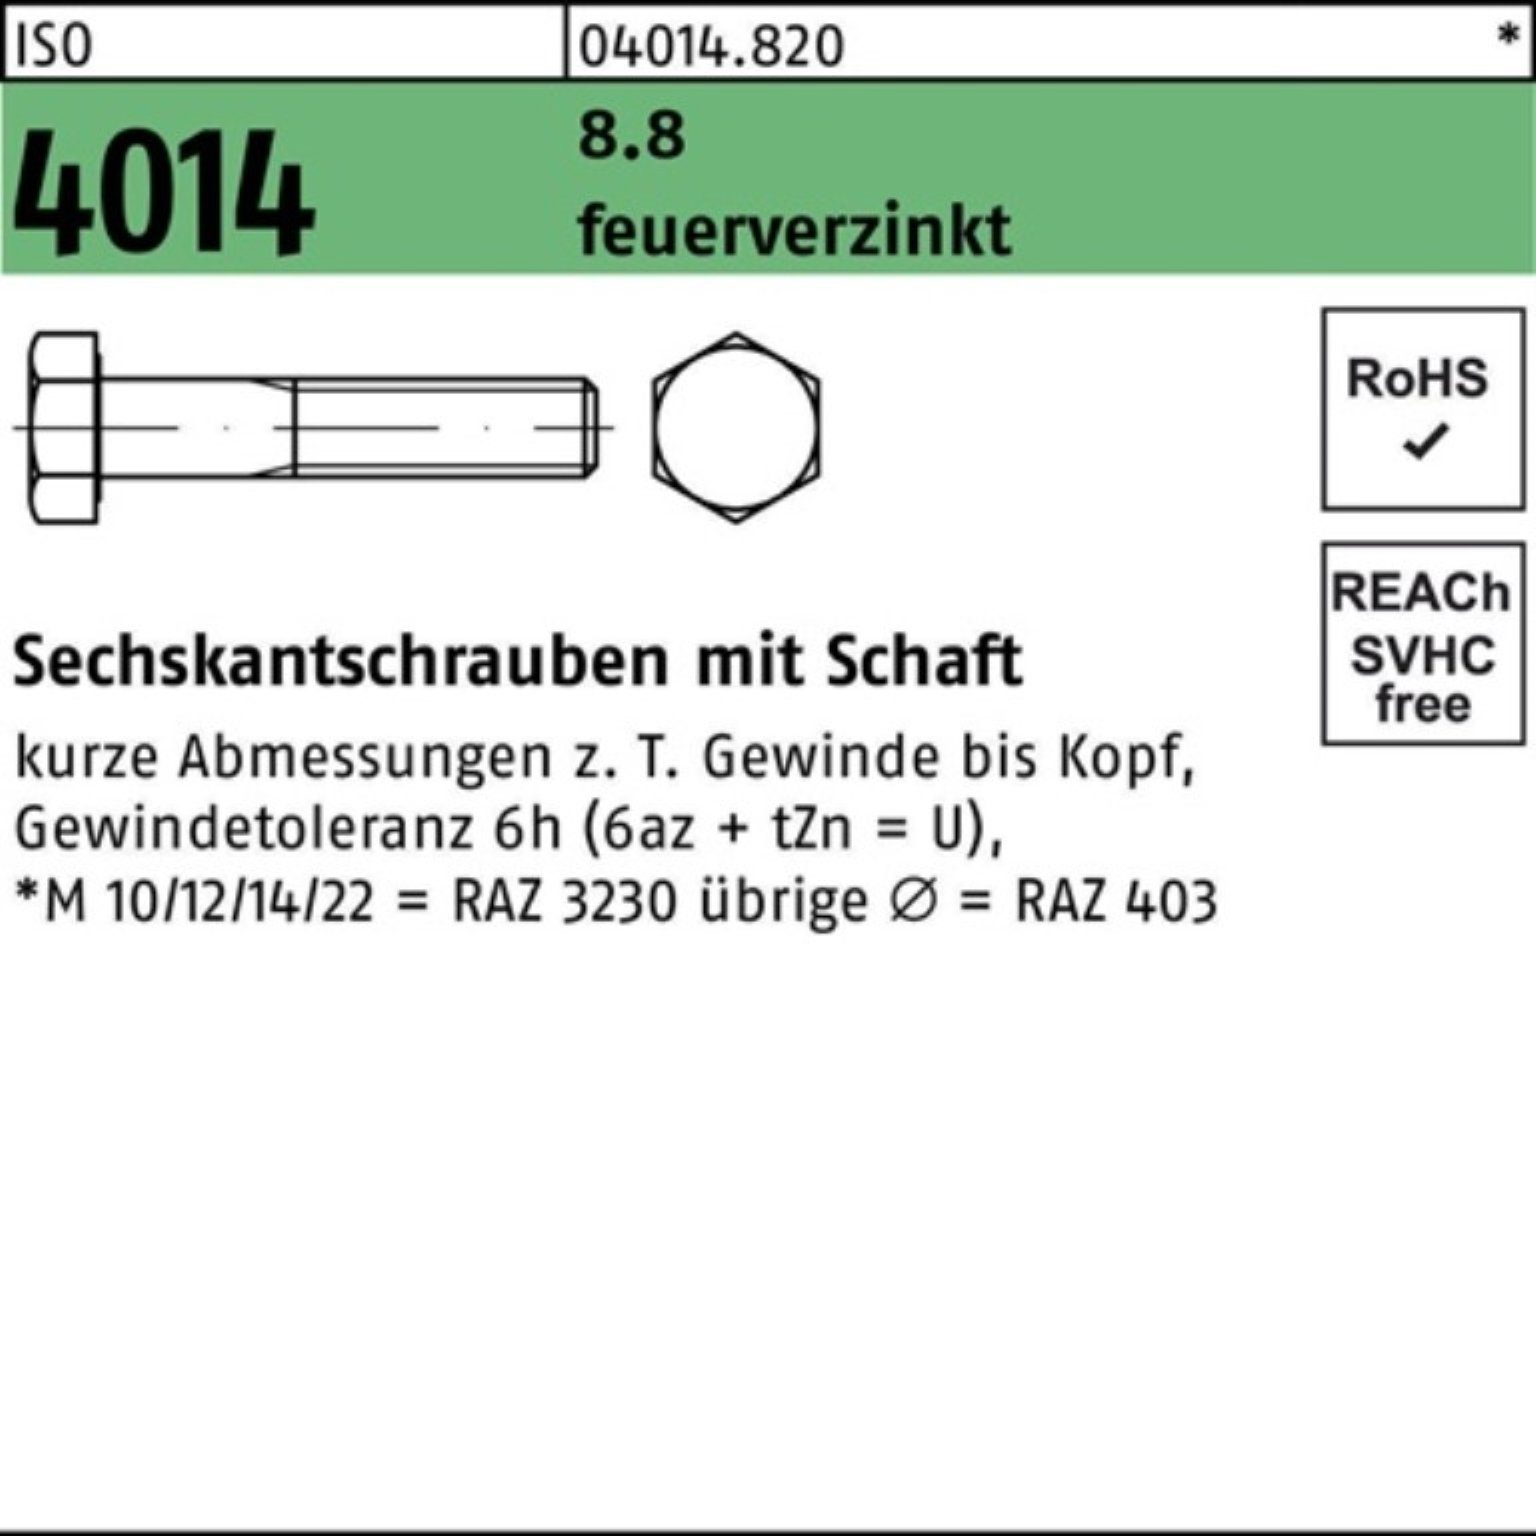 ISO M33x Bufab 1 180 Pack 4014 8.8 Schaft Sechskantschraube Sechskantschraube feuerverz. 100er